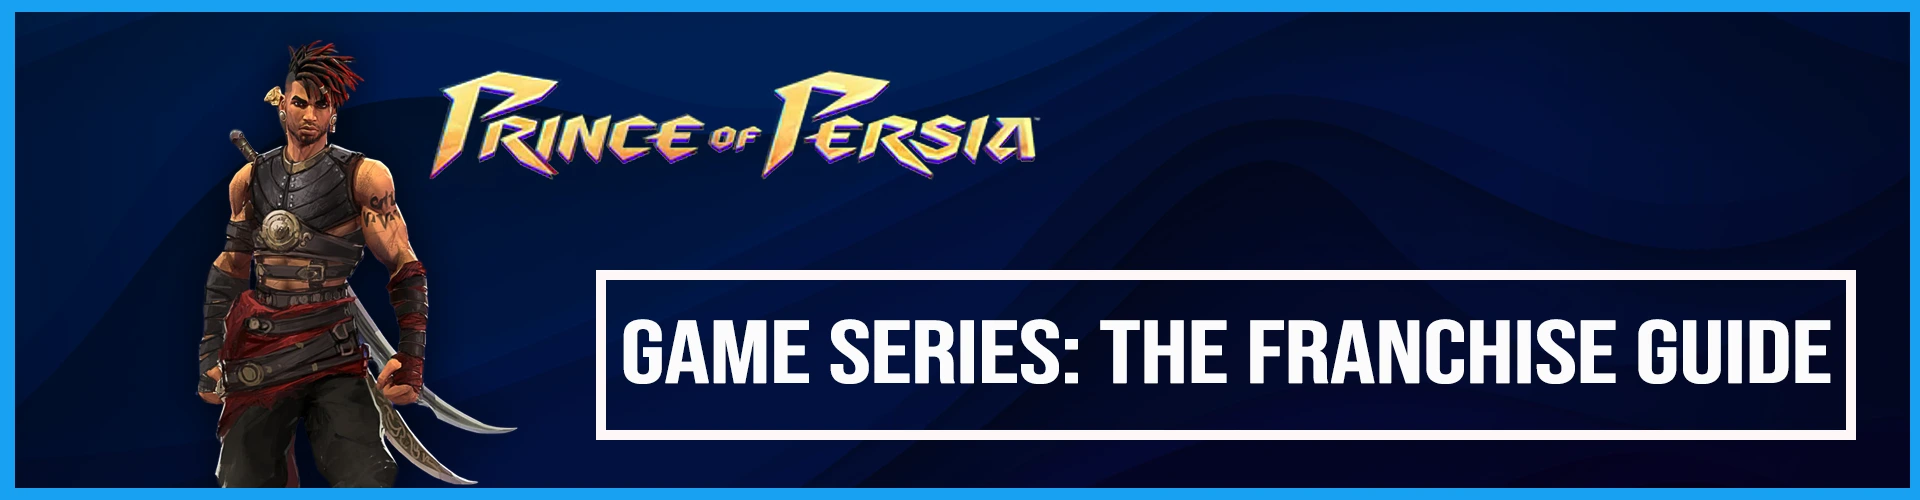 Serie de Juegos Prince of Persia: La Guía de la Franquicia